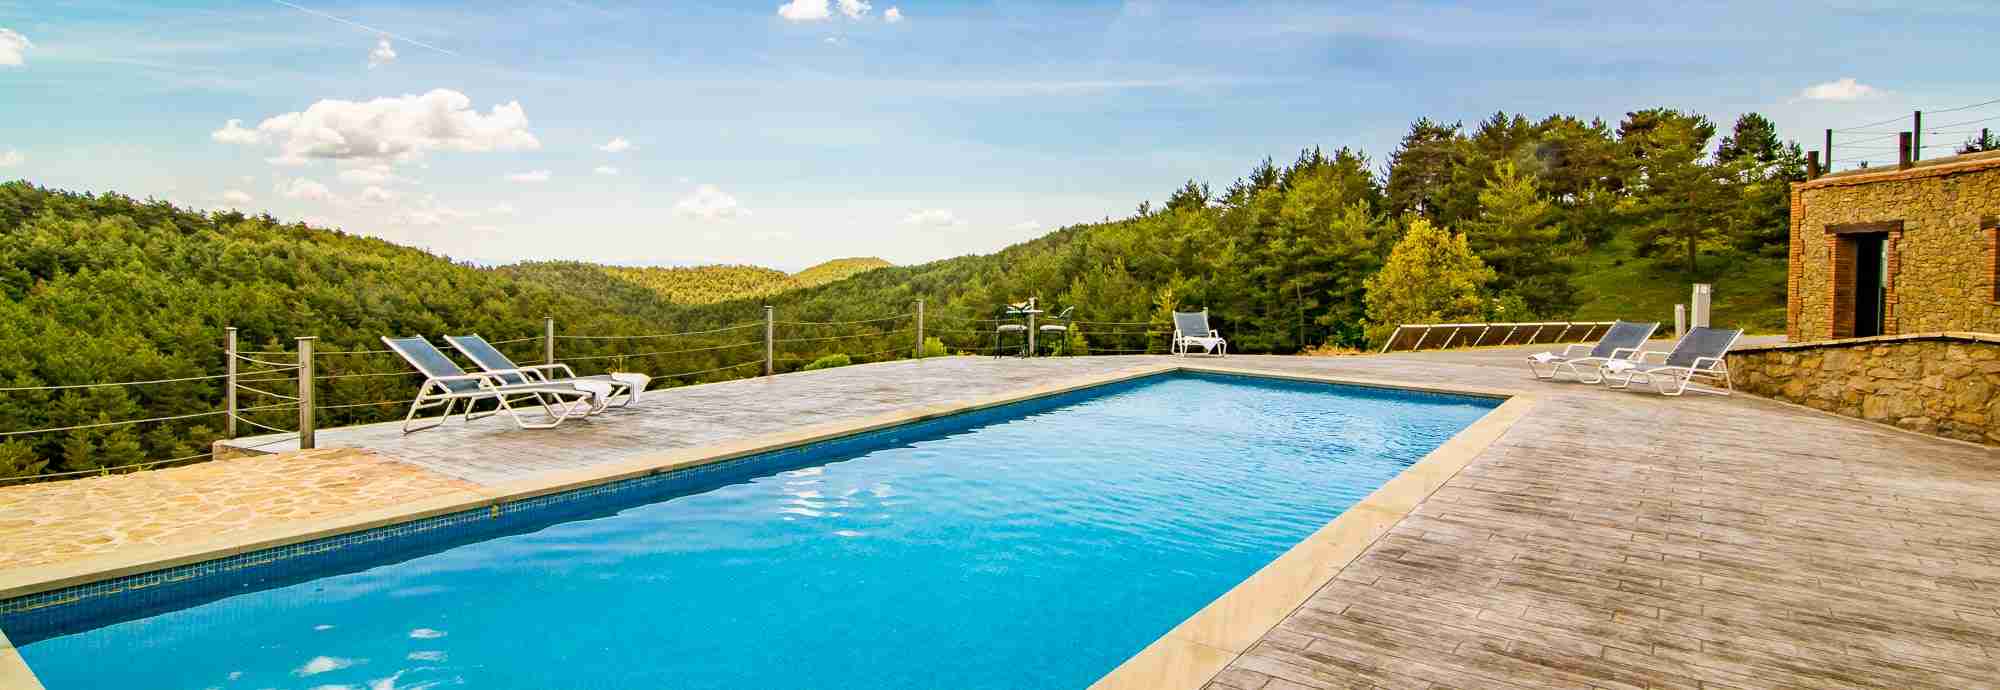 Bonito apartamento en finca con piscina climatizada en Pirineos